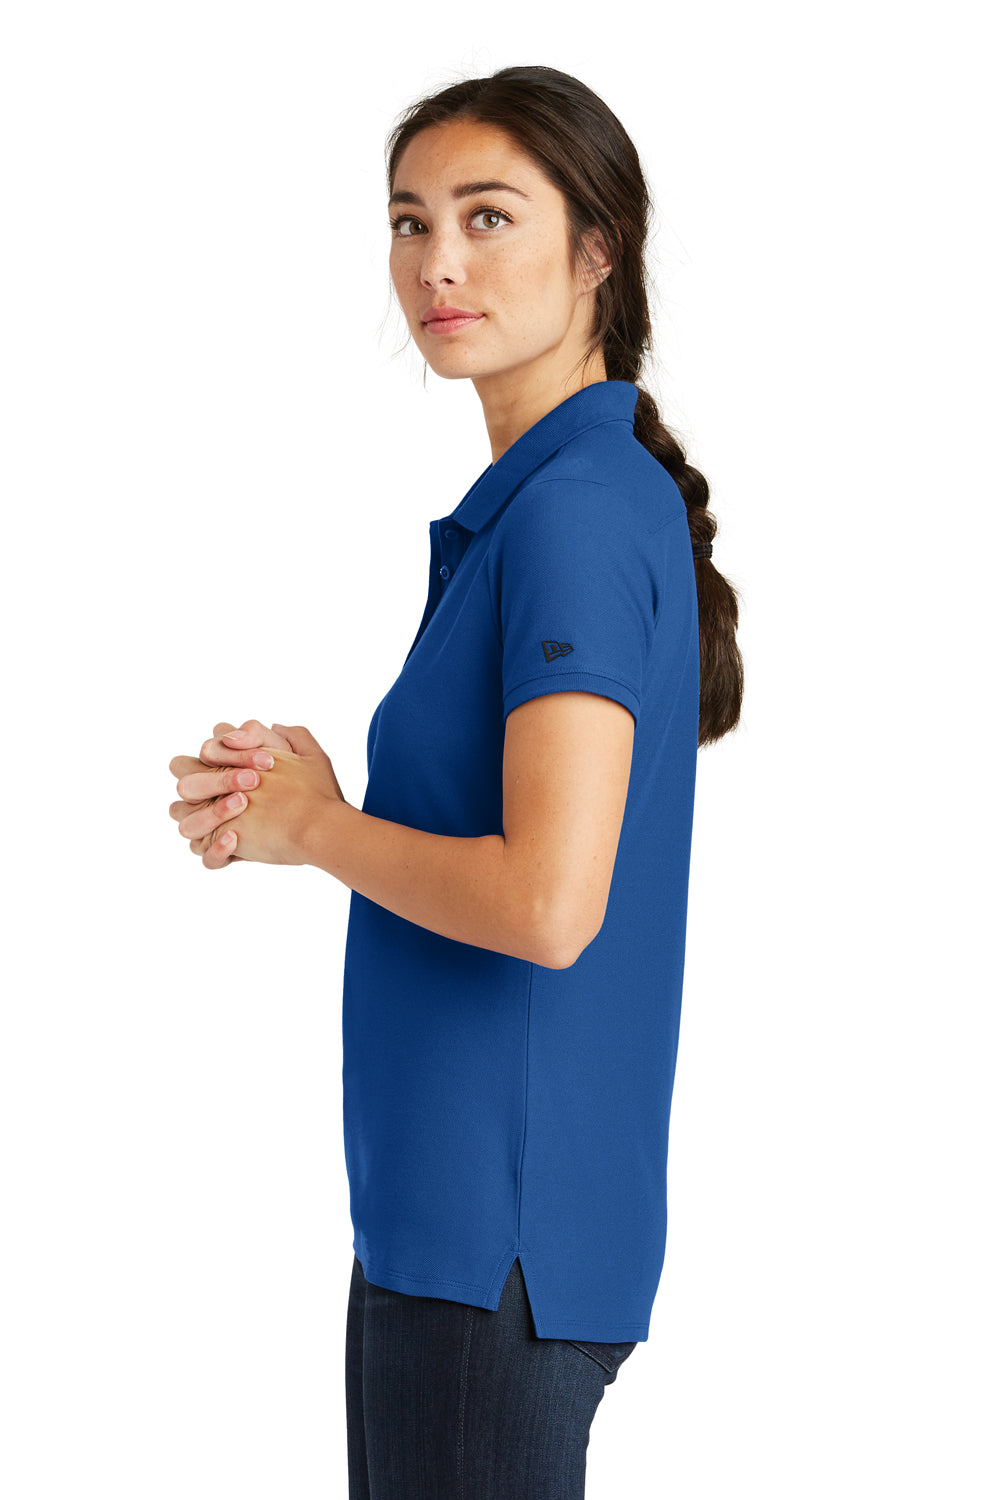 New Era LNEA300 Womens Venue Home Plate Moisture Wicking Short Sleeve Polo Shirt Royal Blue Side